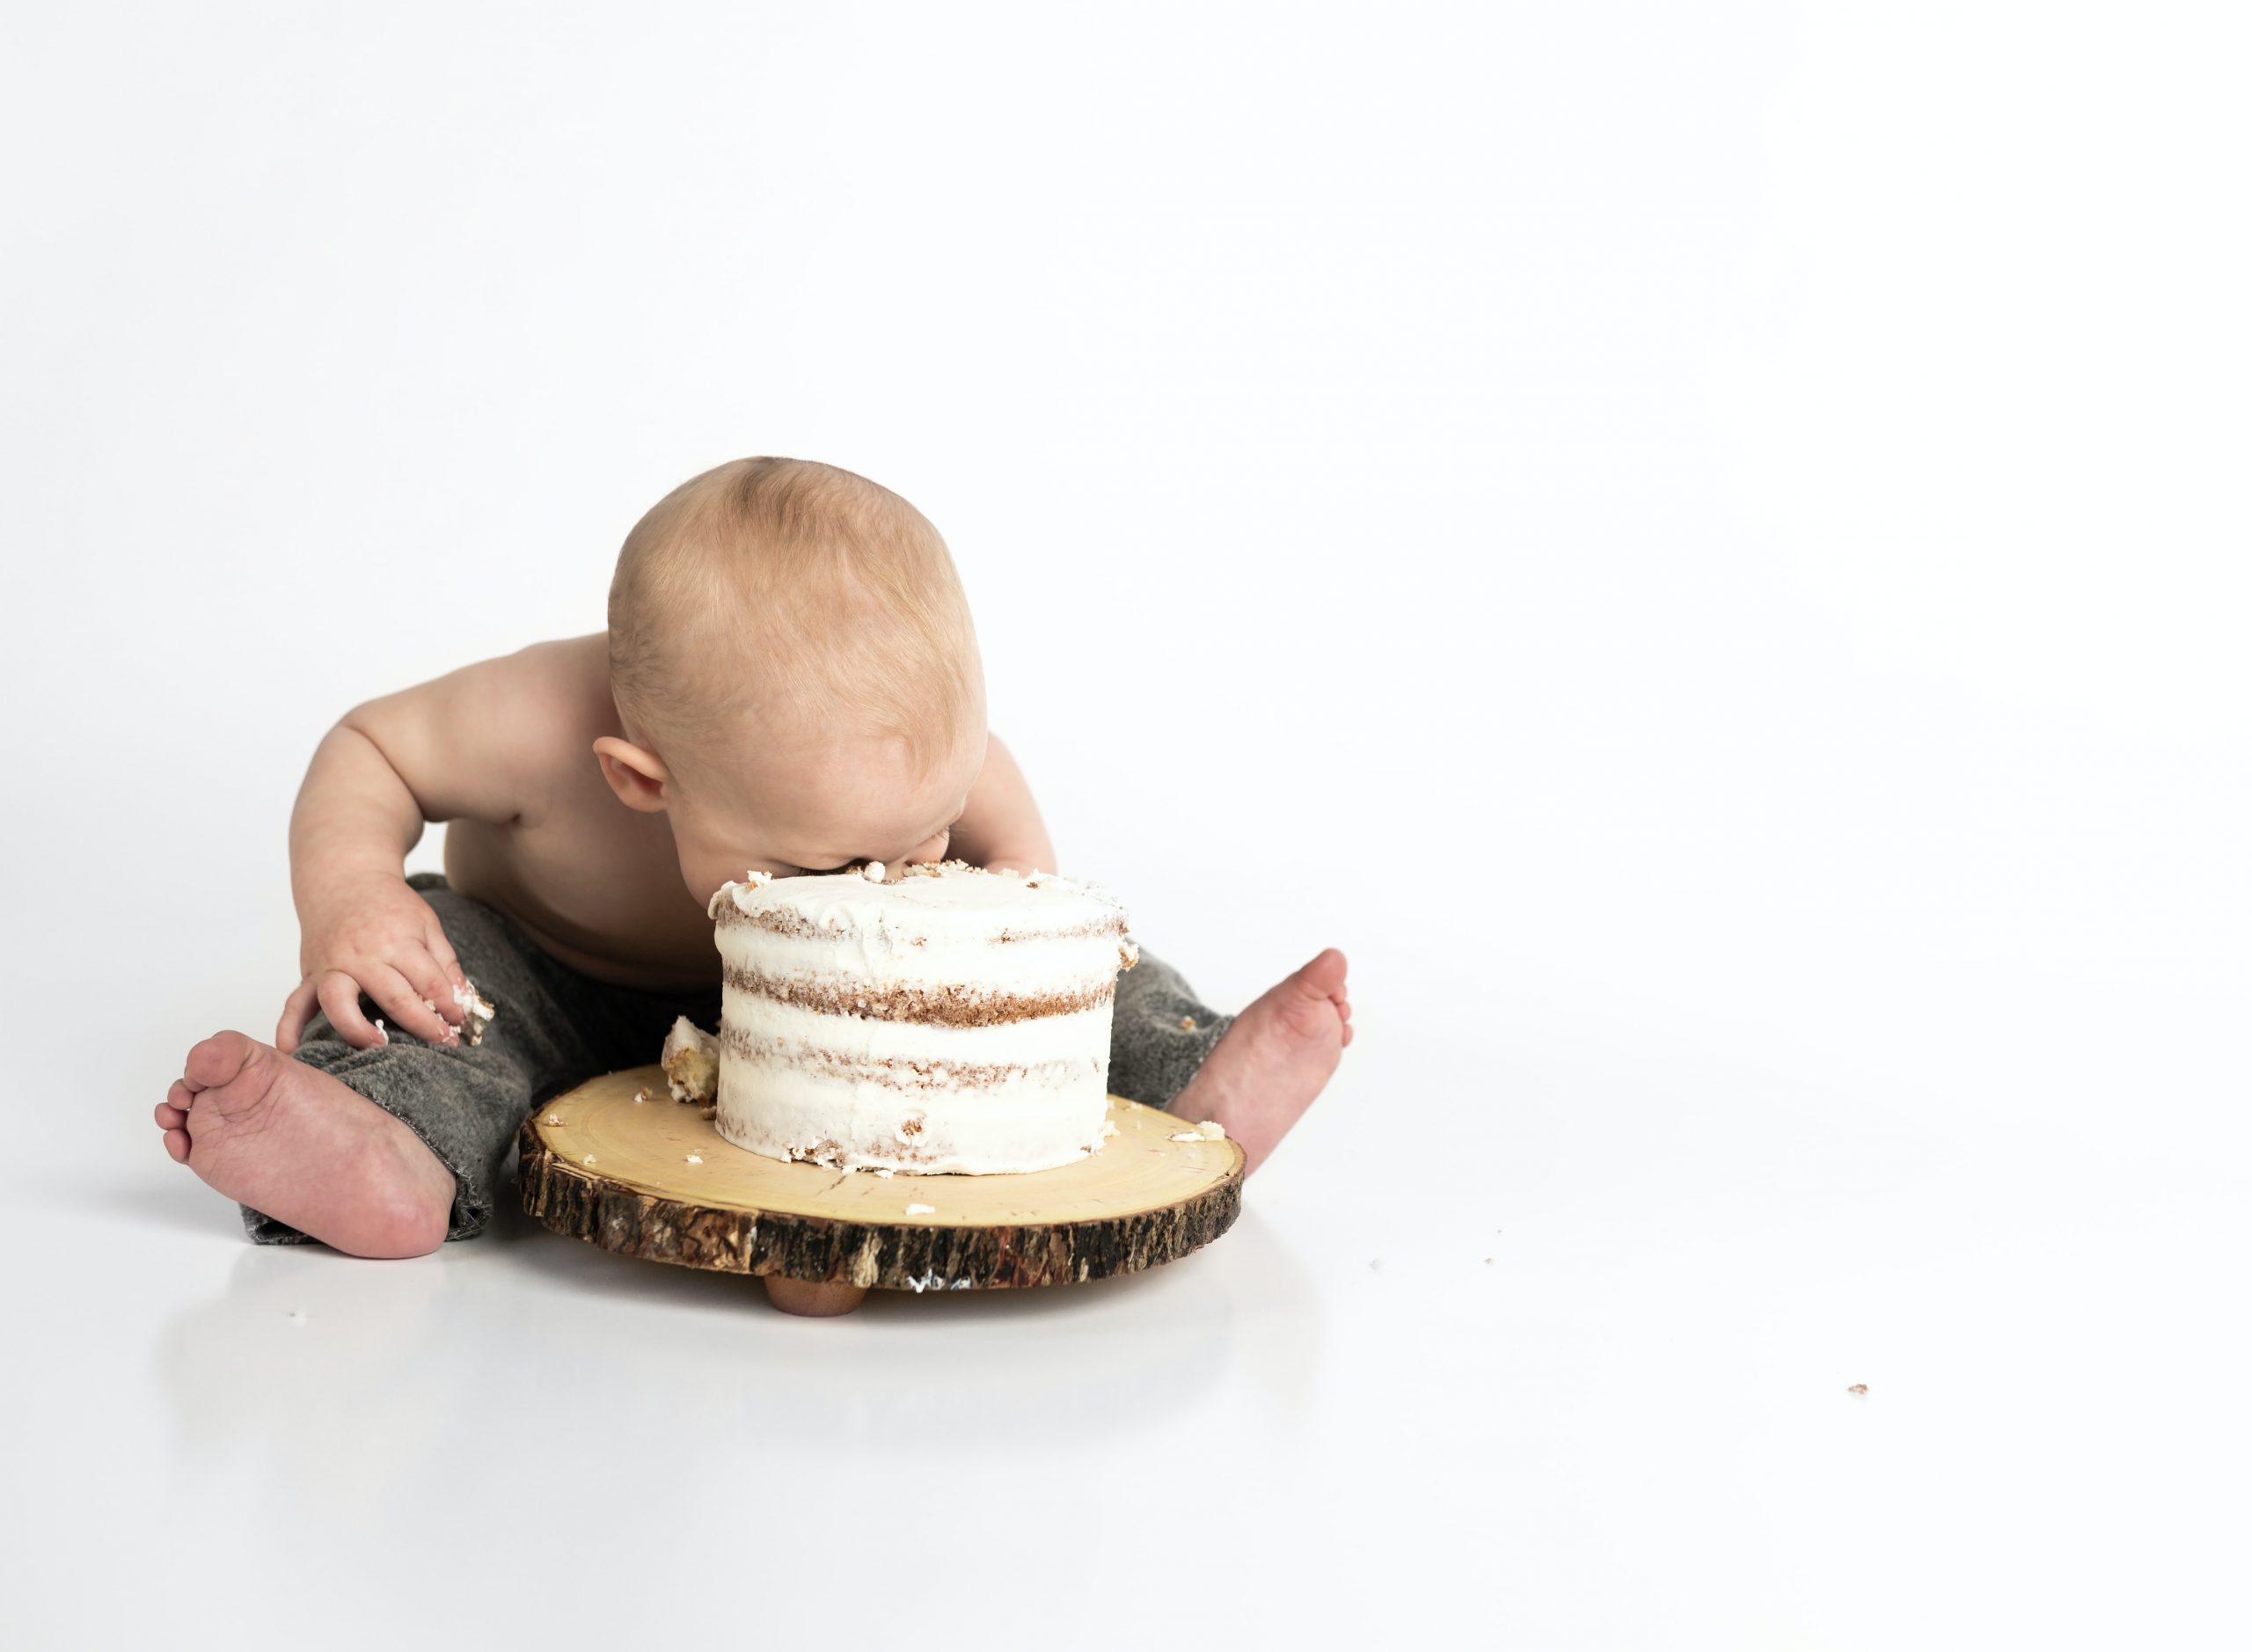 Penelitian: Makan berlebihan pada anak ganggu perkembangan otak